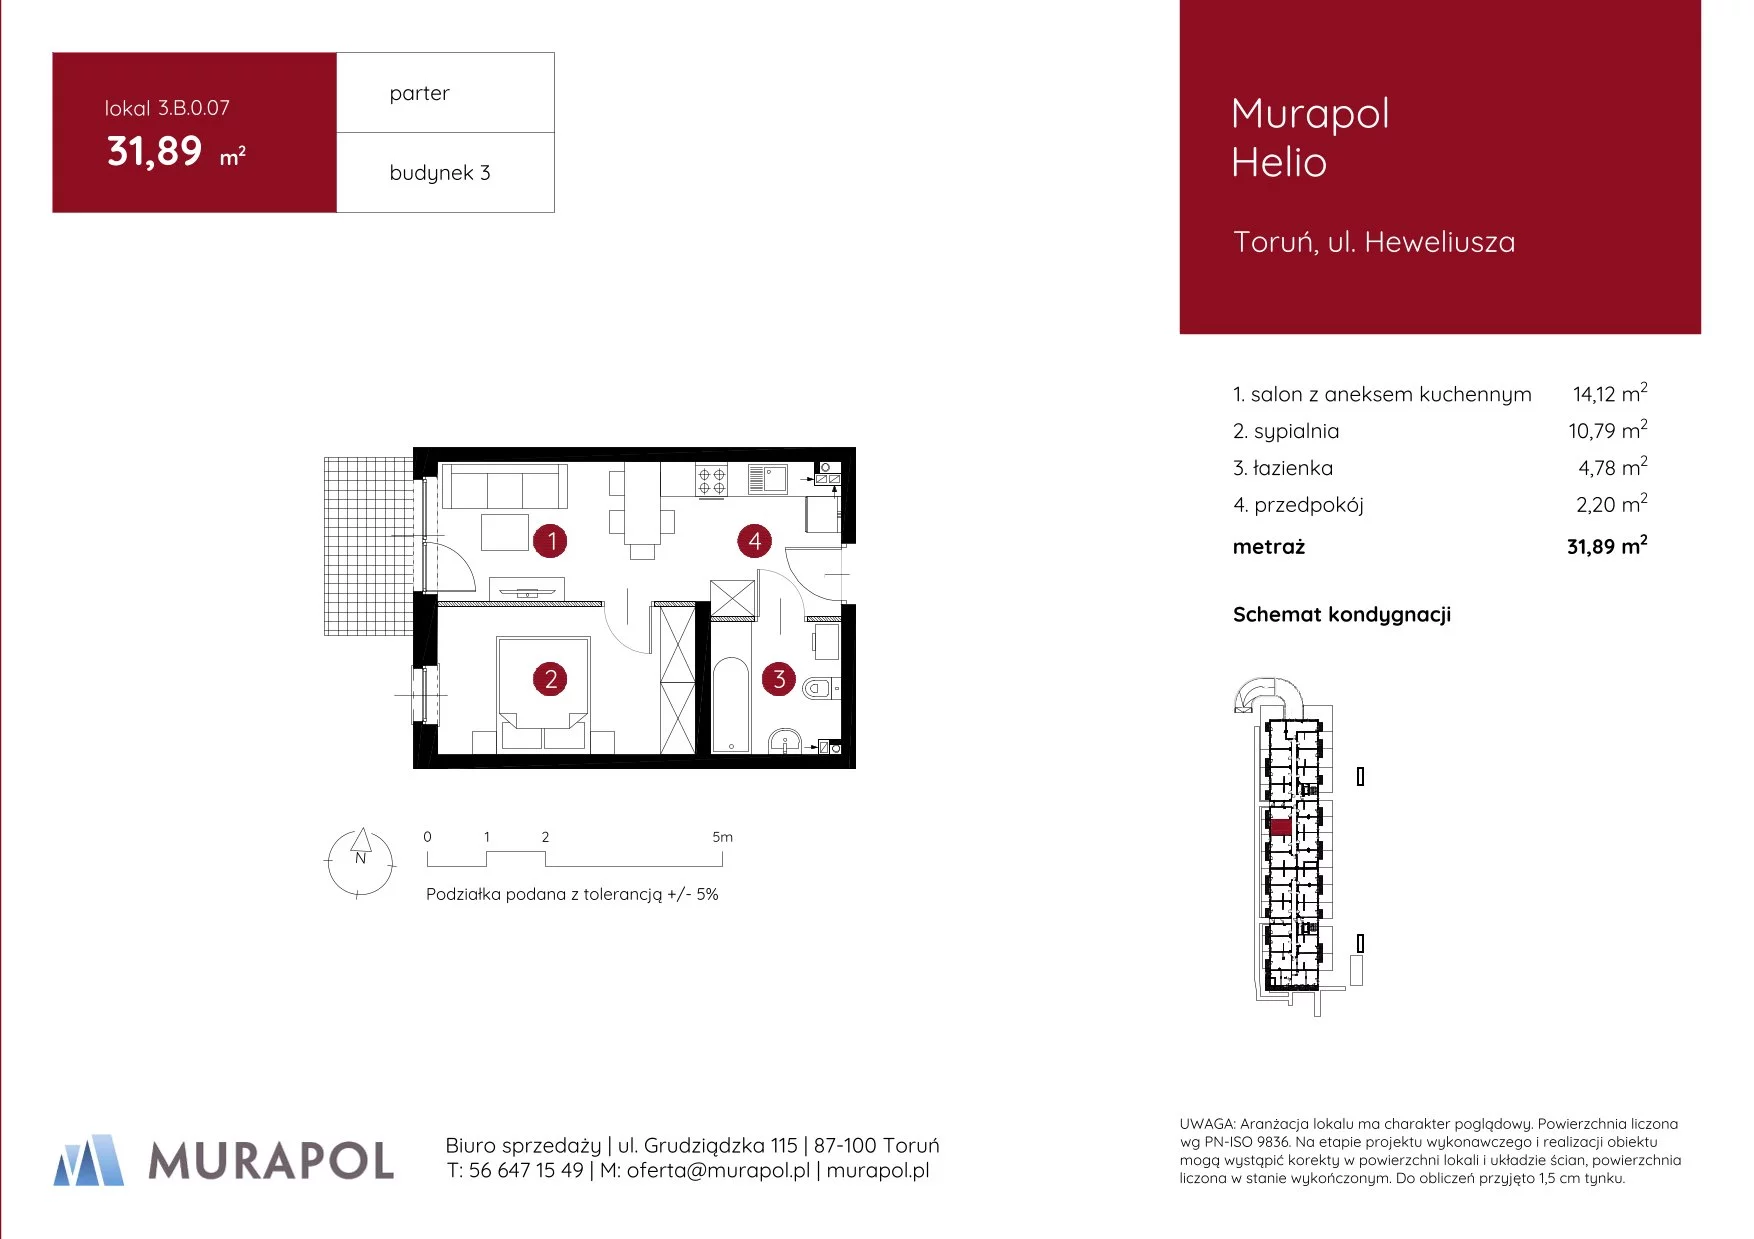 Mieszkanie 31,89 m², parter, oferta nr 3.B.0.07, Murapol Helio, Toruń, Wrzosy, JAR, ul. Heweliusza